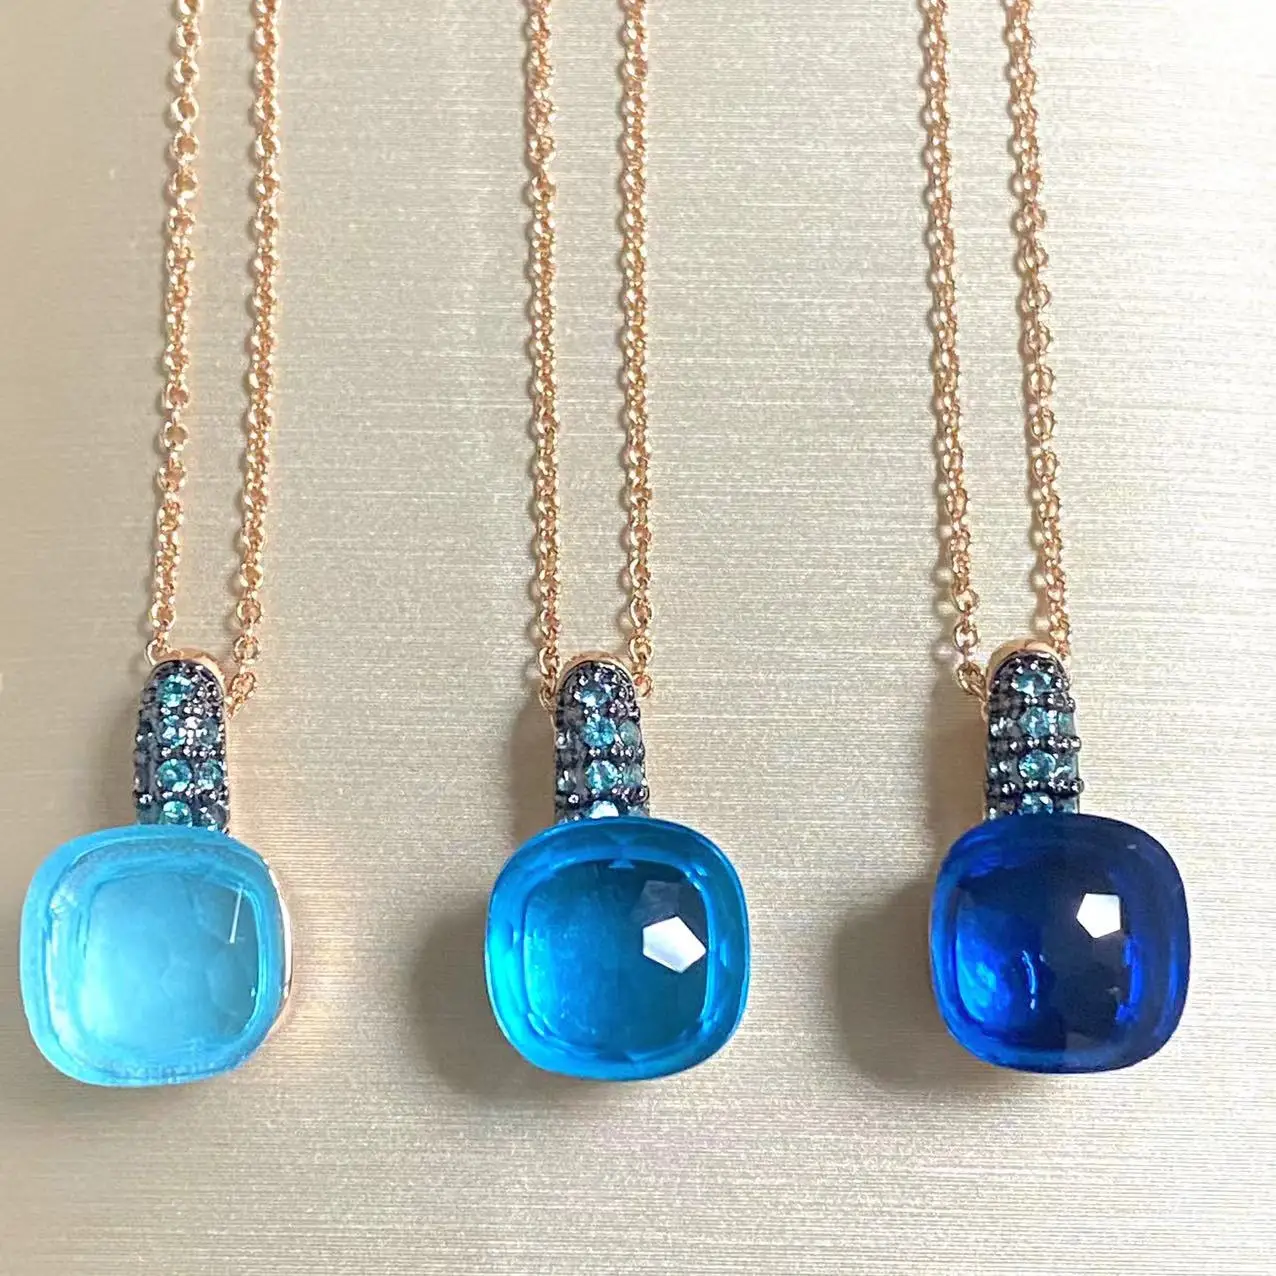 

Ожерелье с подвеской Nudo с кристаллом 10,6 мм, инкрустация каплями воды, Синий Циркон с черным покрытием, ожерелье для женщин, ювелирные изделия, подарок